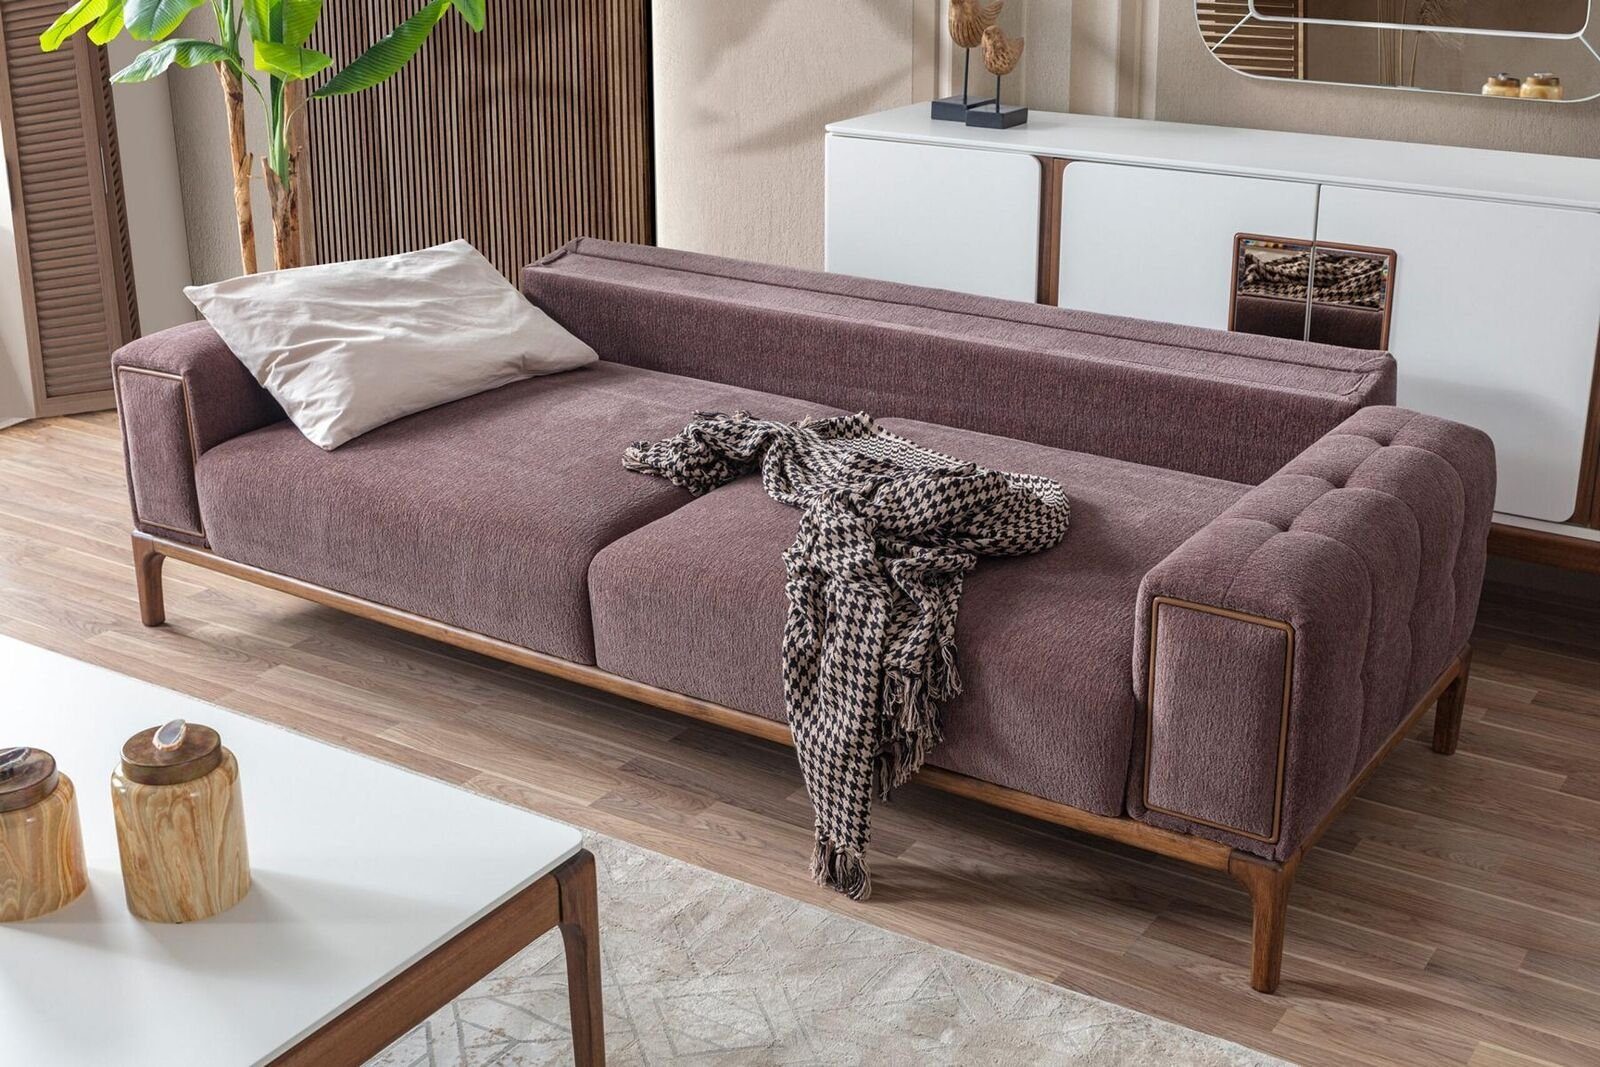 JVmoebel Europa Modernes 3-Sitzer Relax Sofa 3 Sofa 3er Wohnzimmer Teile, Sofa Sitzer 1 Luxus Couchen, Made in